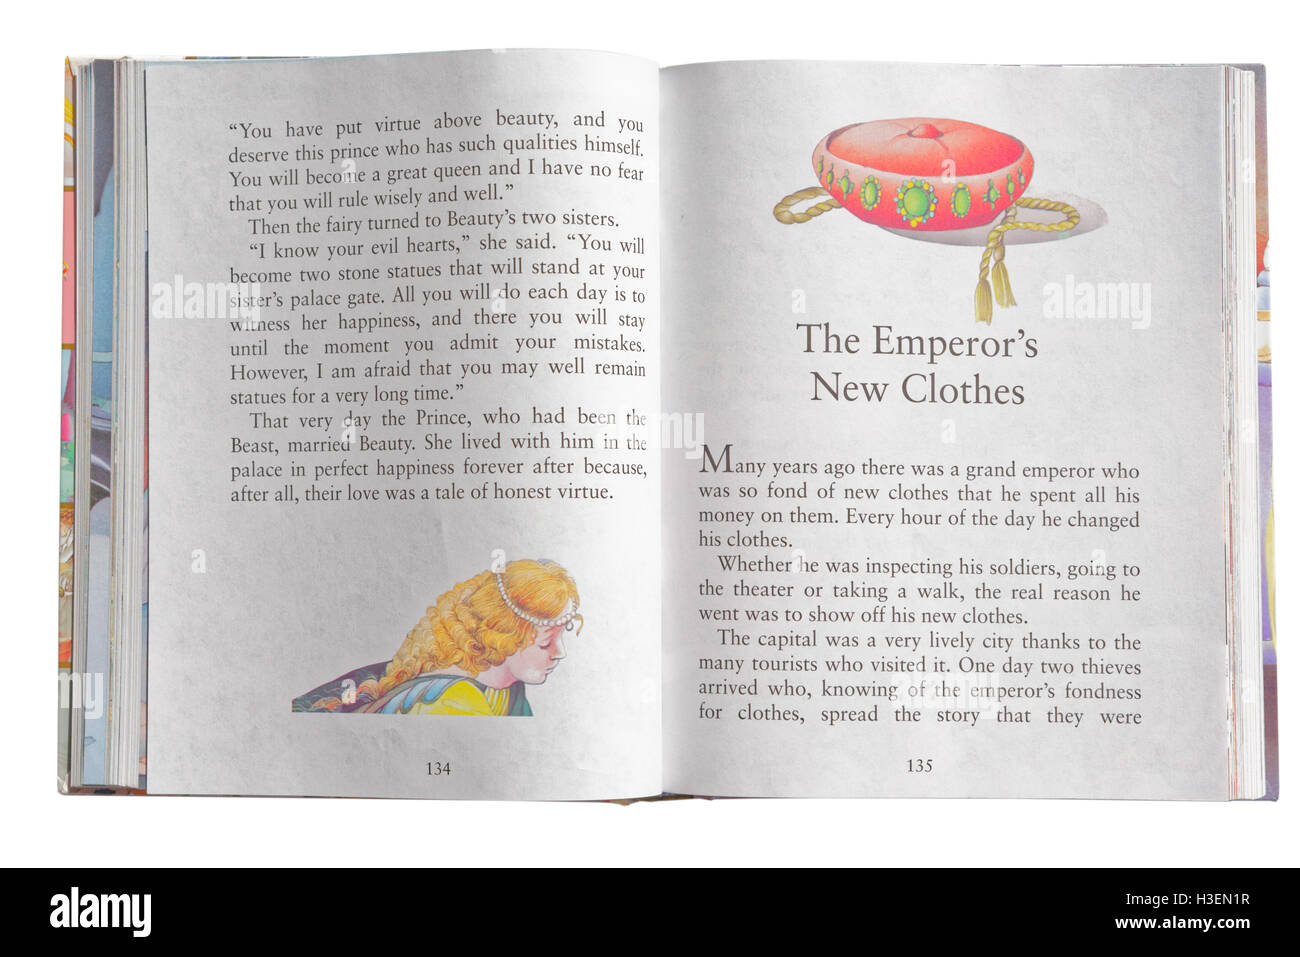 Les habits neufs de l'empereur dans un livre de contes Banque D'Images